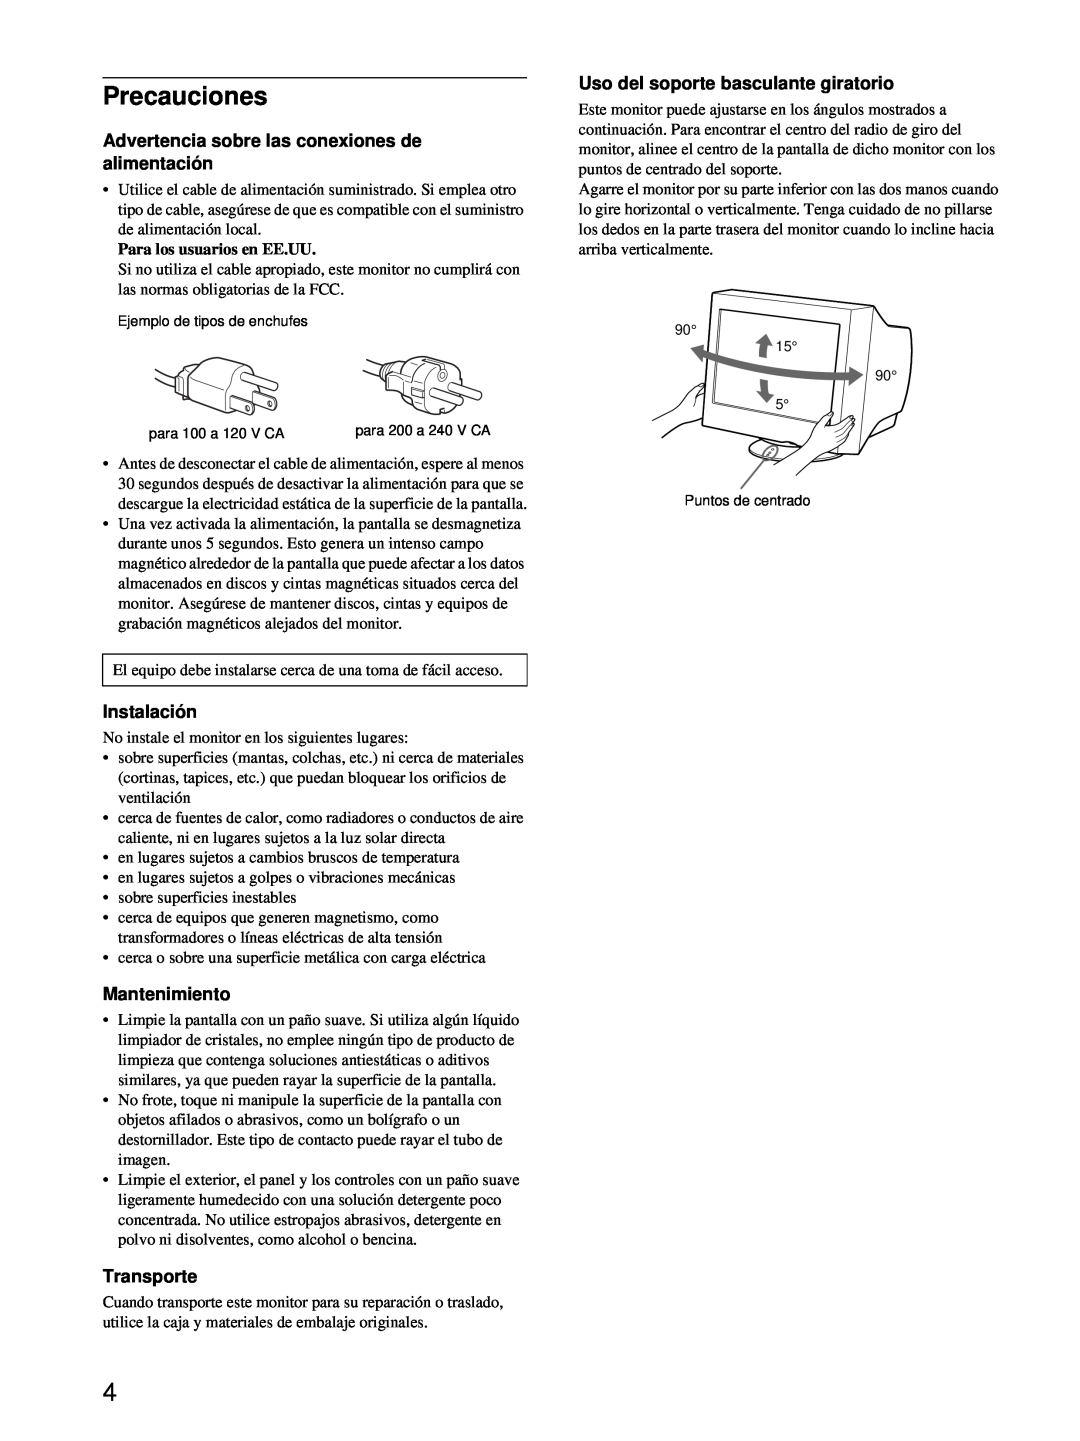 Sony CPD-E100 manual Precauciones, Advertencia sobre las conexiones de alimentación, Instalación, Mantenimiento, Transporte 